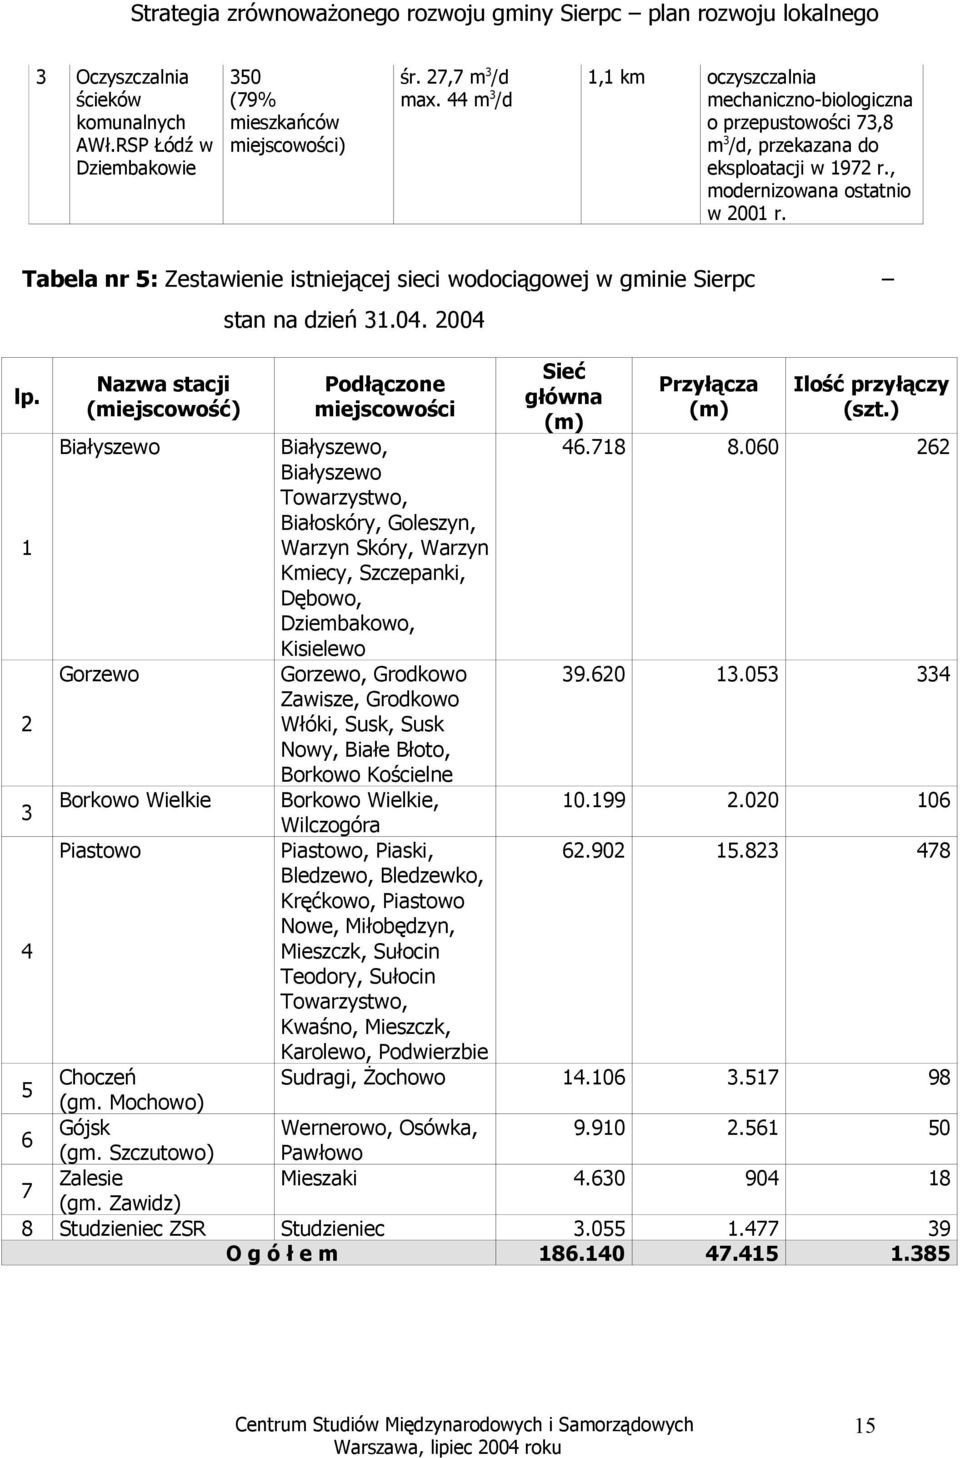 Tabela nr 5: Zestawienie istniejącej sieci wodociągowej w gminie Sierpc lp. 1 2 3 4 Nazwa stacji (miejscowość) Białyszewo Gorzewo Borkowo Wielkie Piastowo stan na dzień 31.04.